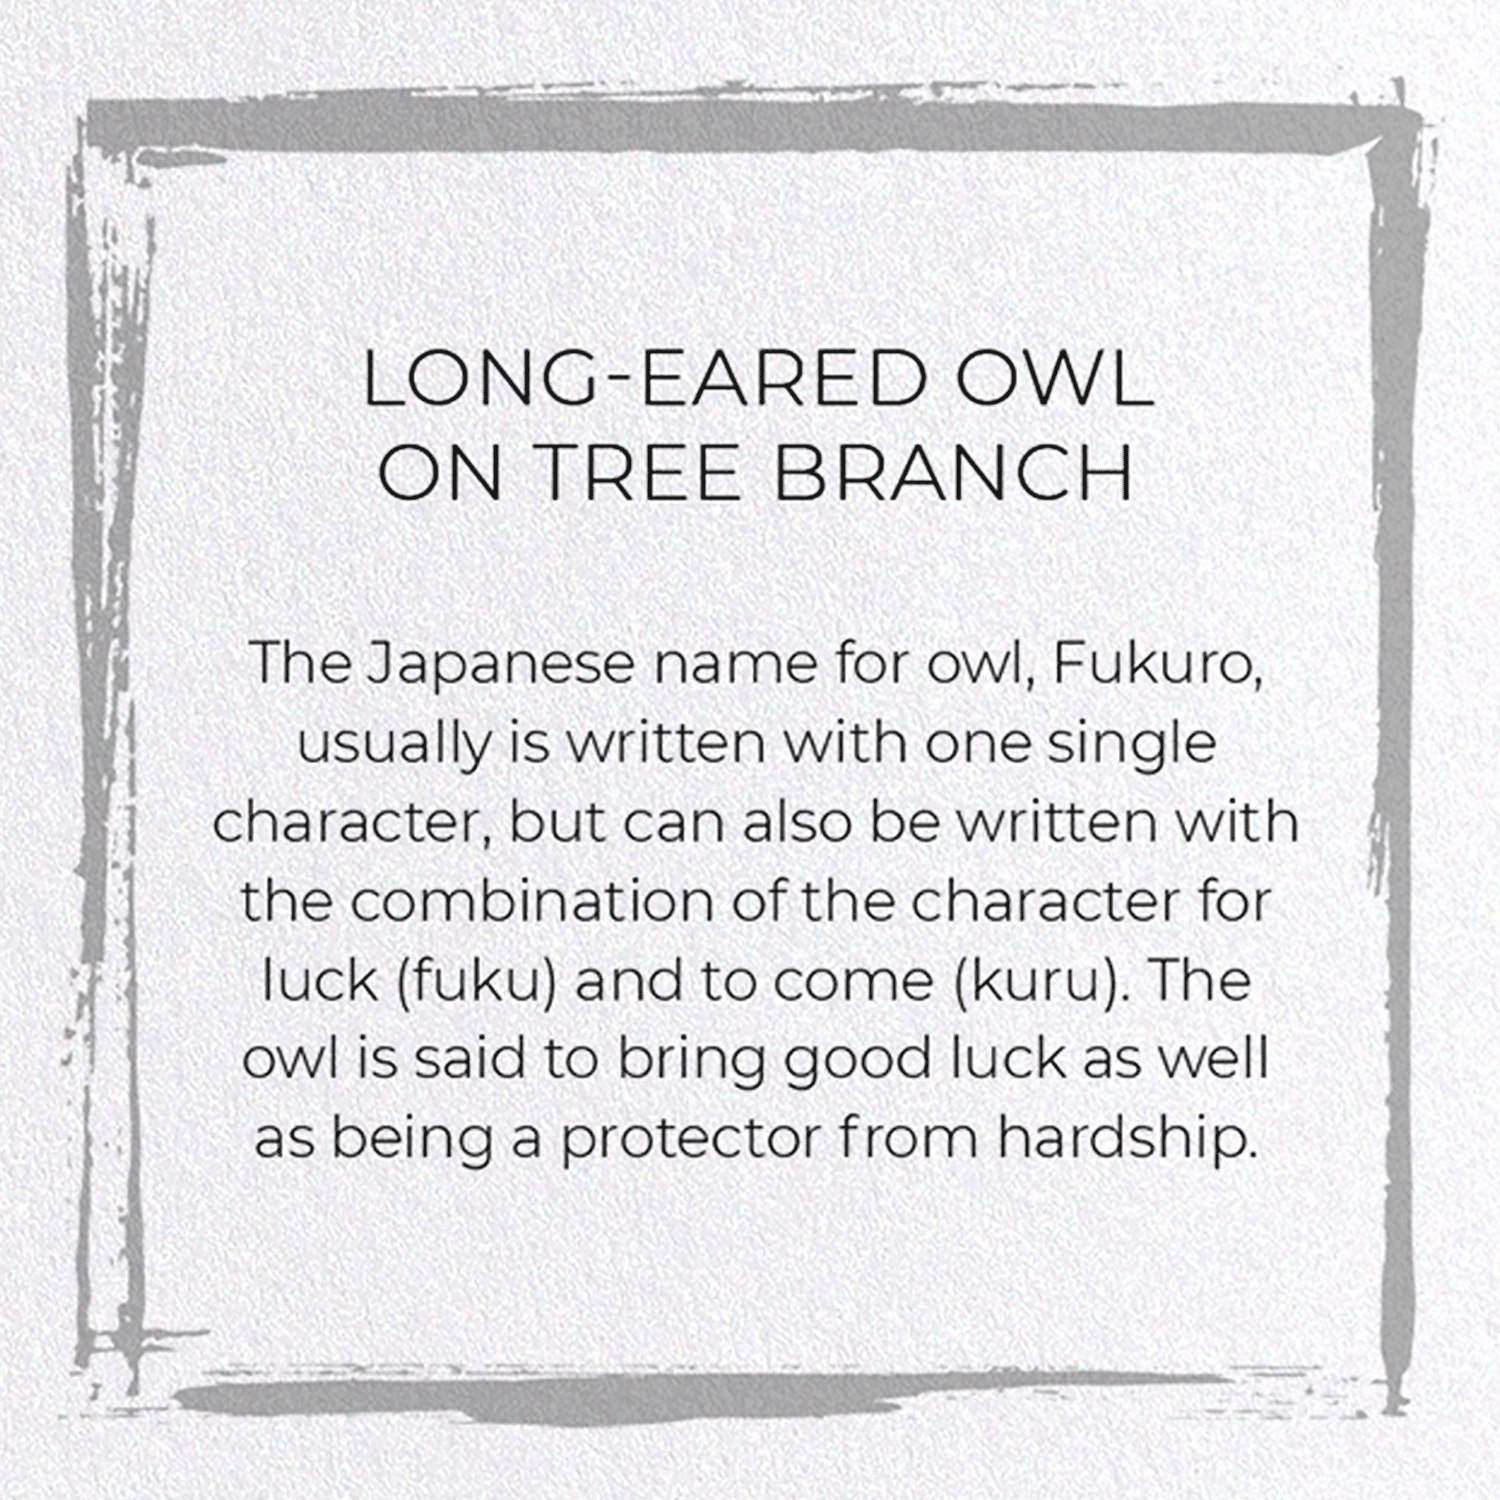 LONG-EARED OWL ON TREE BRANCH